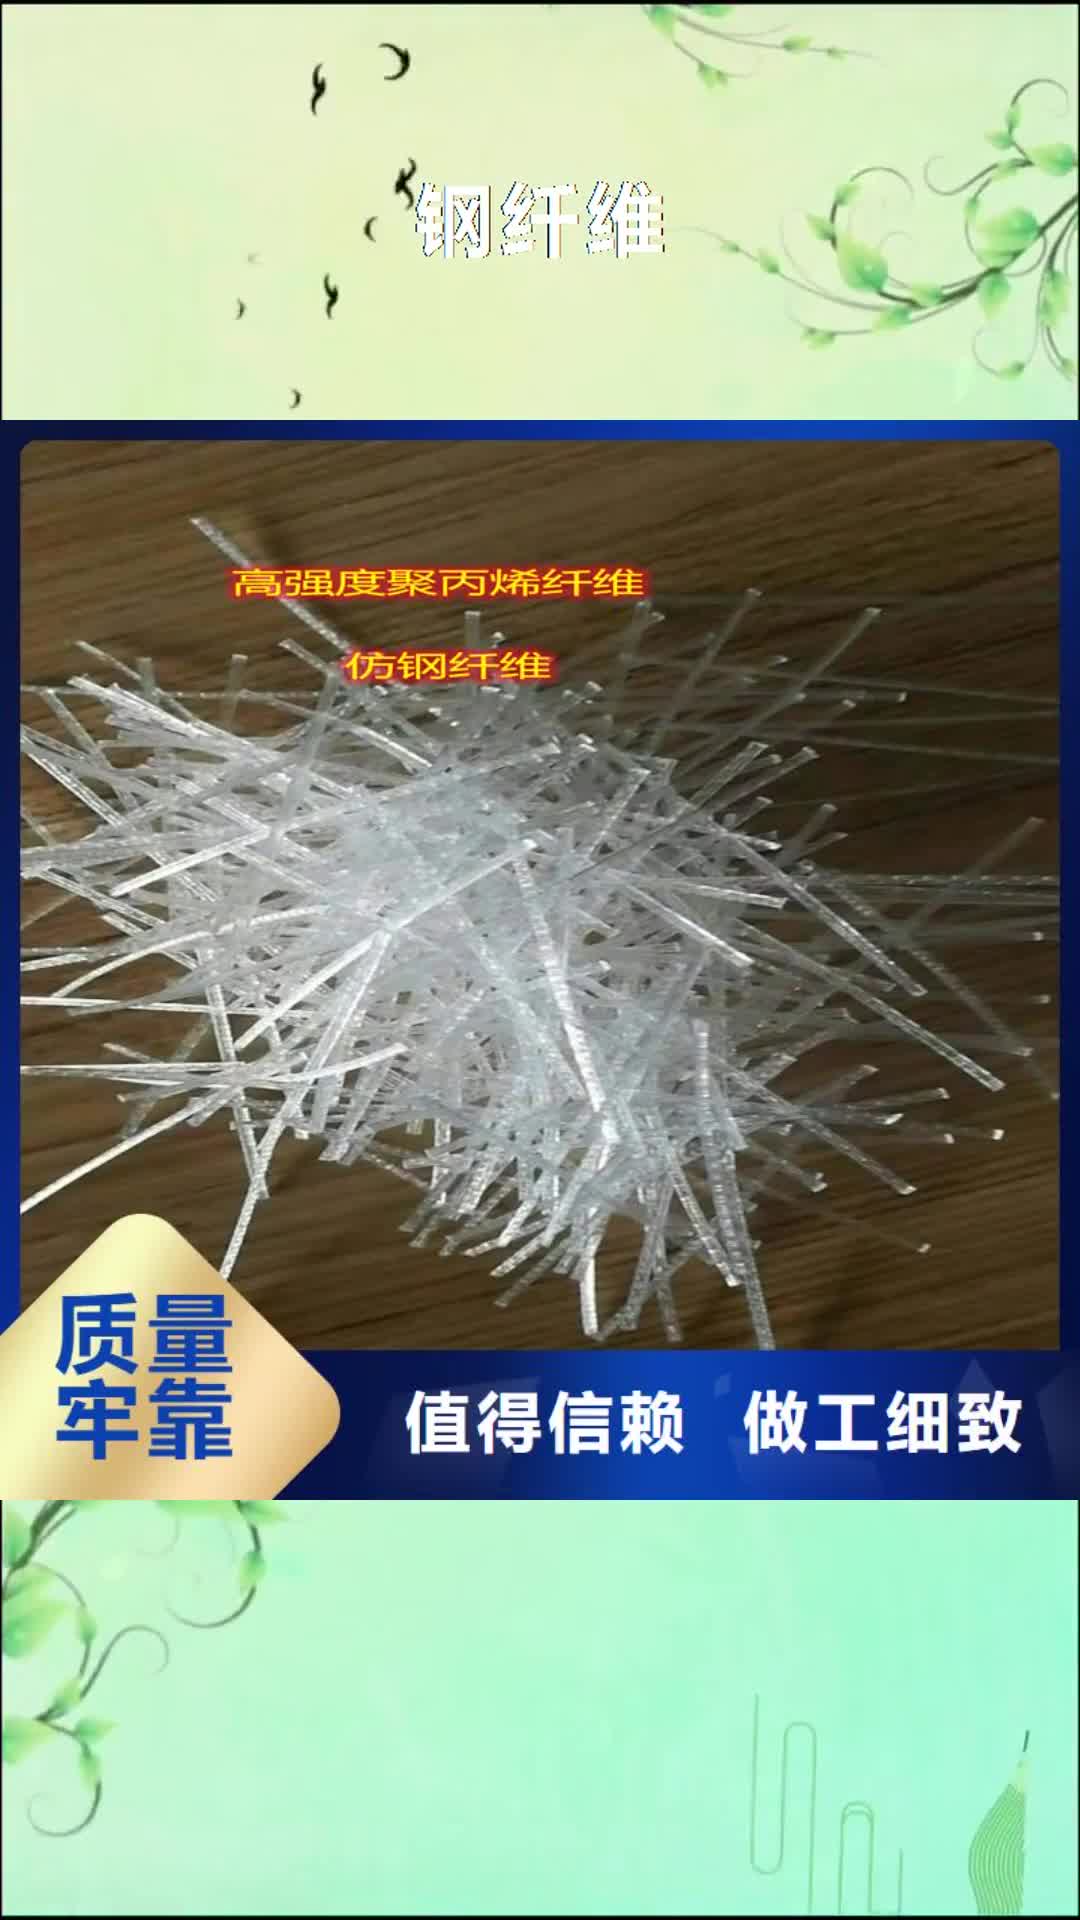 衢州 钢纤维-【铜片止水】专注产品质量与服务